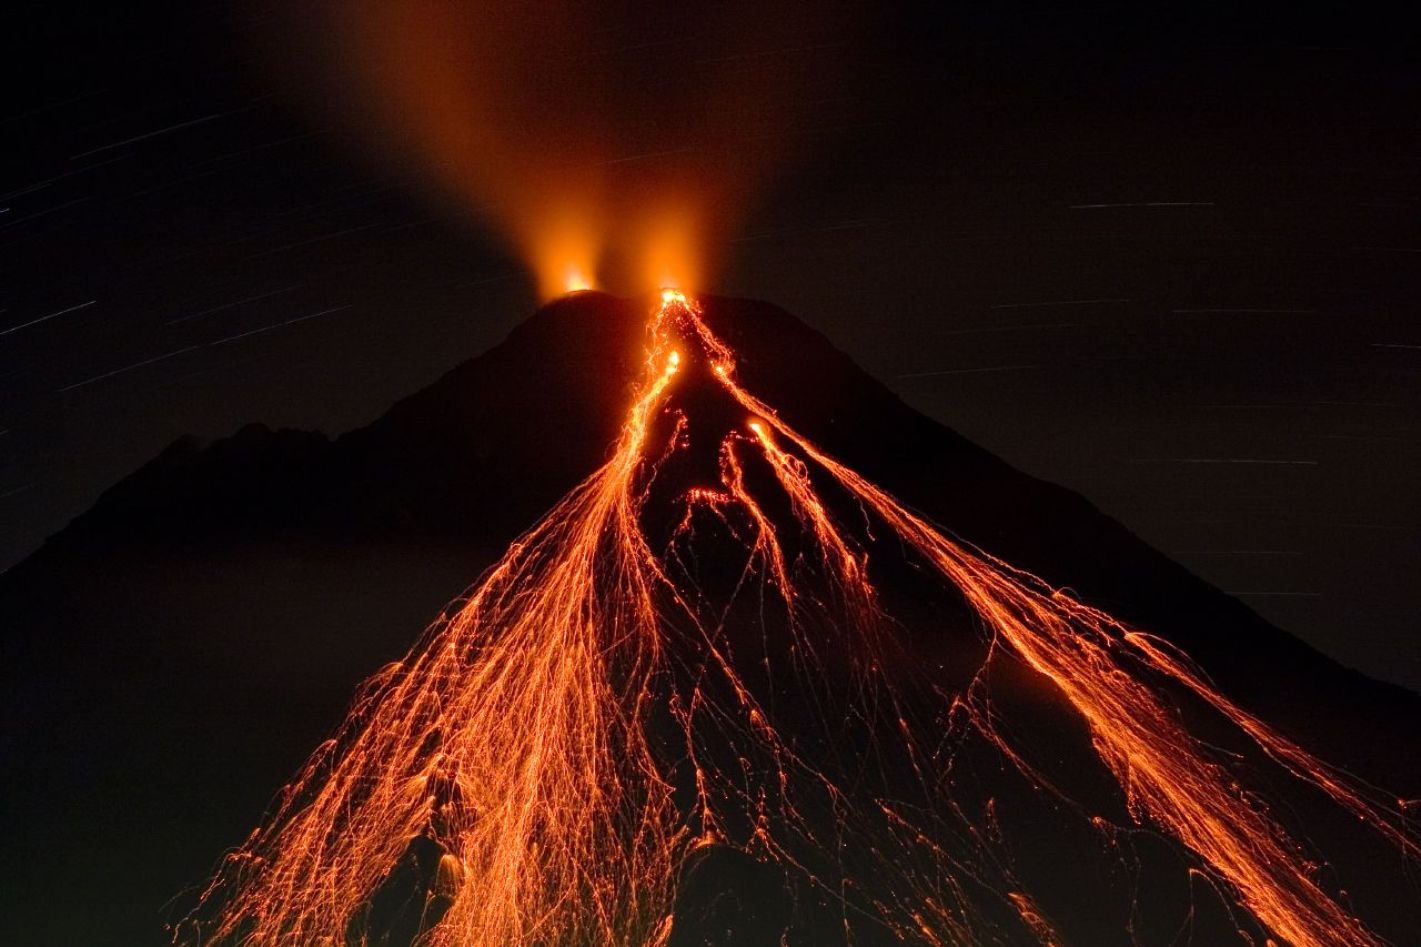 L'activité volcanique et la fonte des glaces sont deux phénomènes liés qui façonnent notre planète. Ici, l'Arenal,&nbsp;un volcan situé au Costa Rica,&nbsp;en éruption. C'est un jeune stratovolcan puisque sa première éruption s'est produite il y a 7.000 ans, ce qui fait même&nbsp;de lui le volcan le plus jeune du pays. © Matthew G. Landry, Wikipédia, CC by 2.5